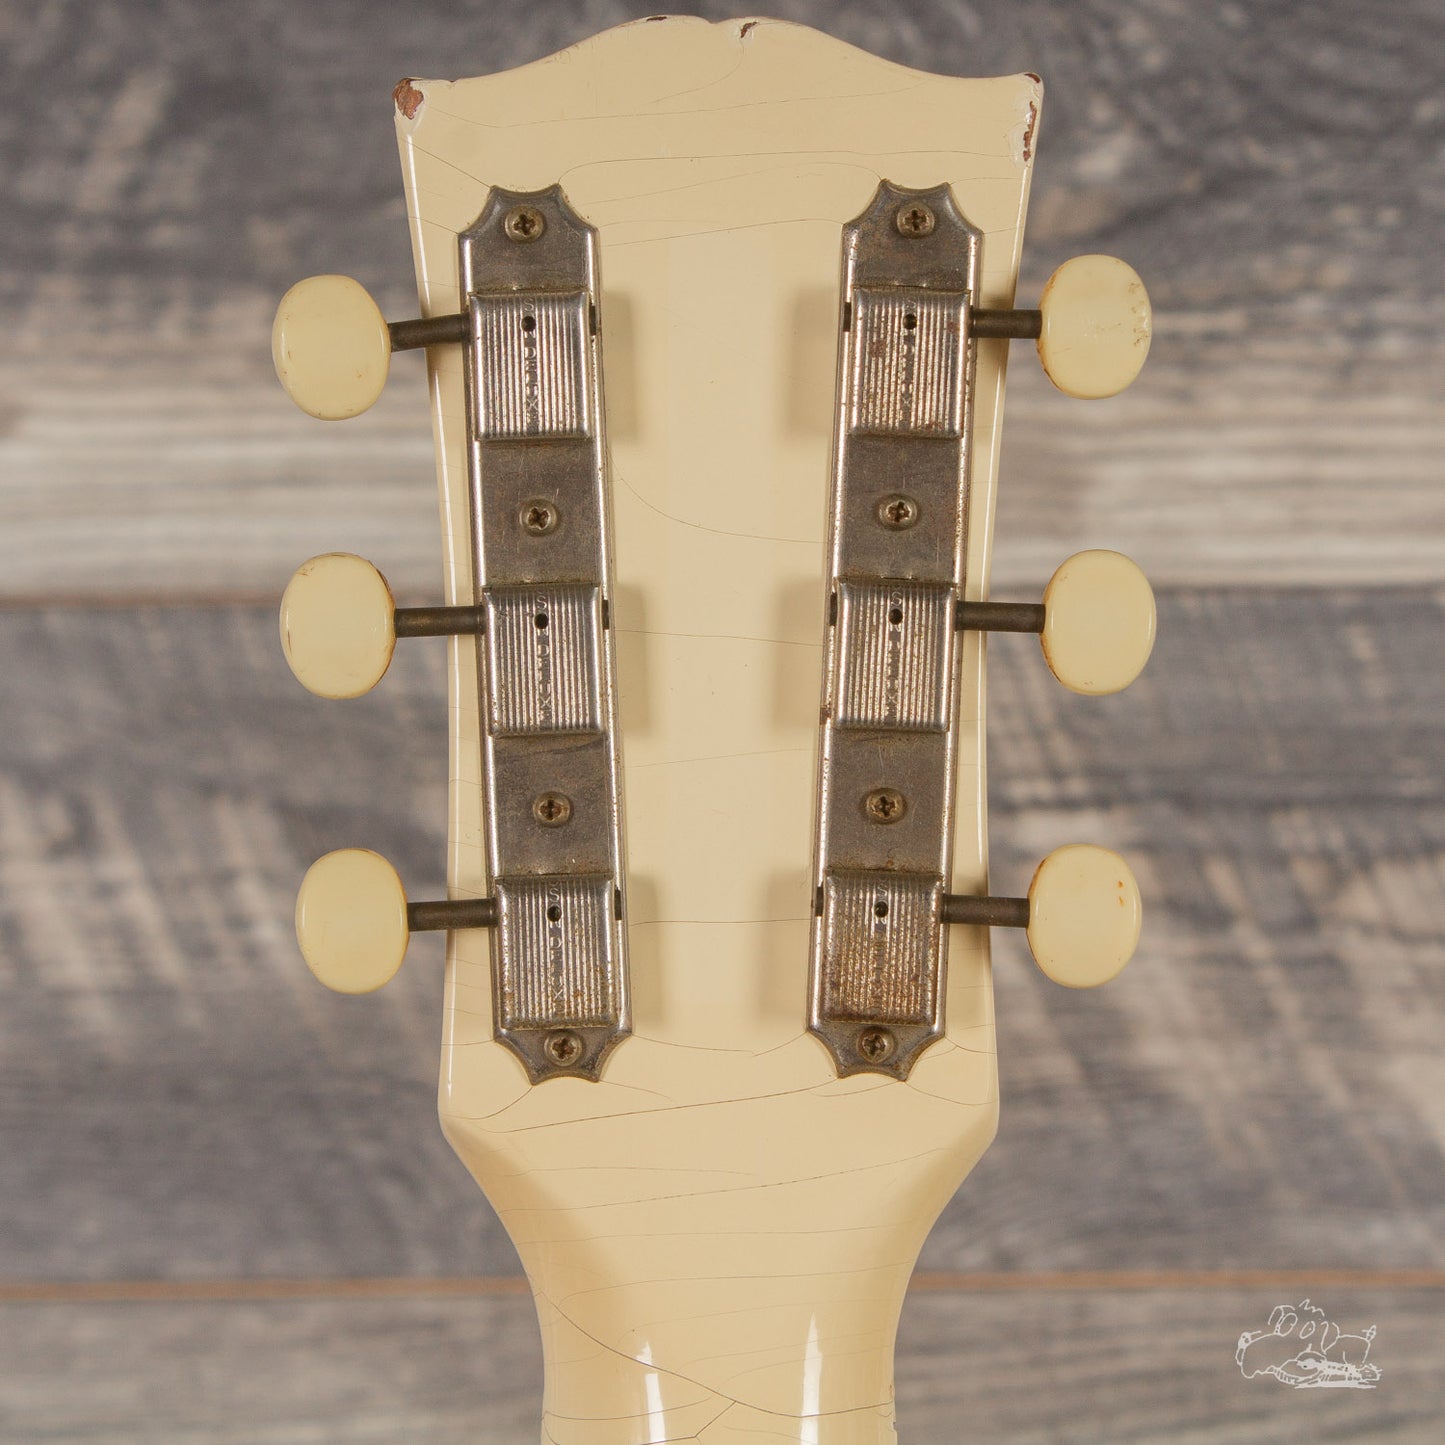 1963 Gibson SG Special - Polaris White